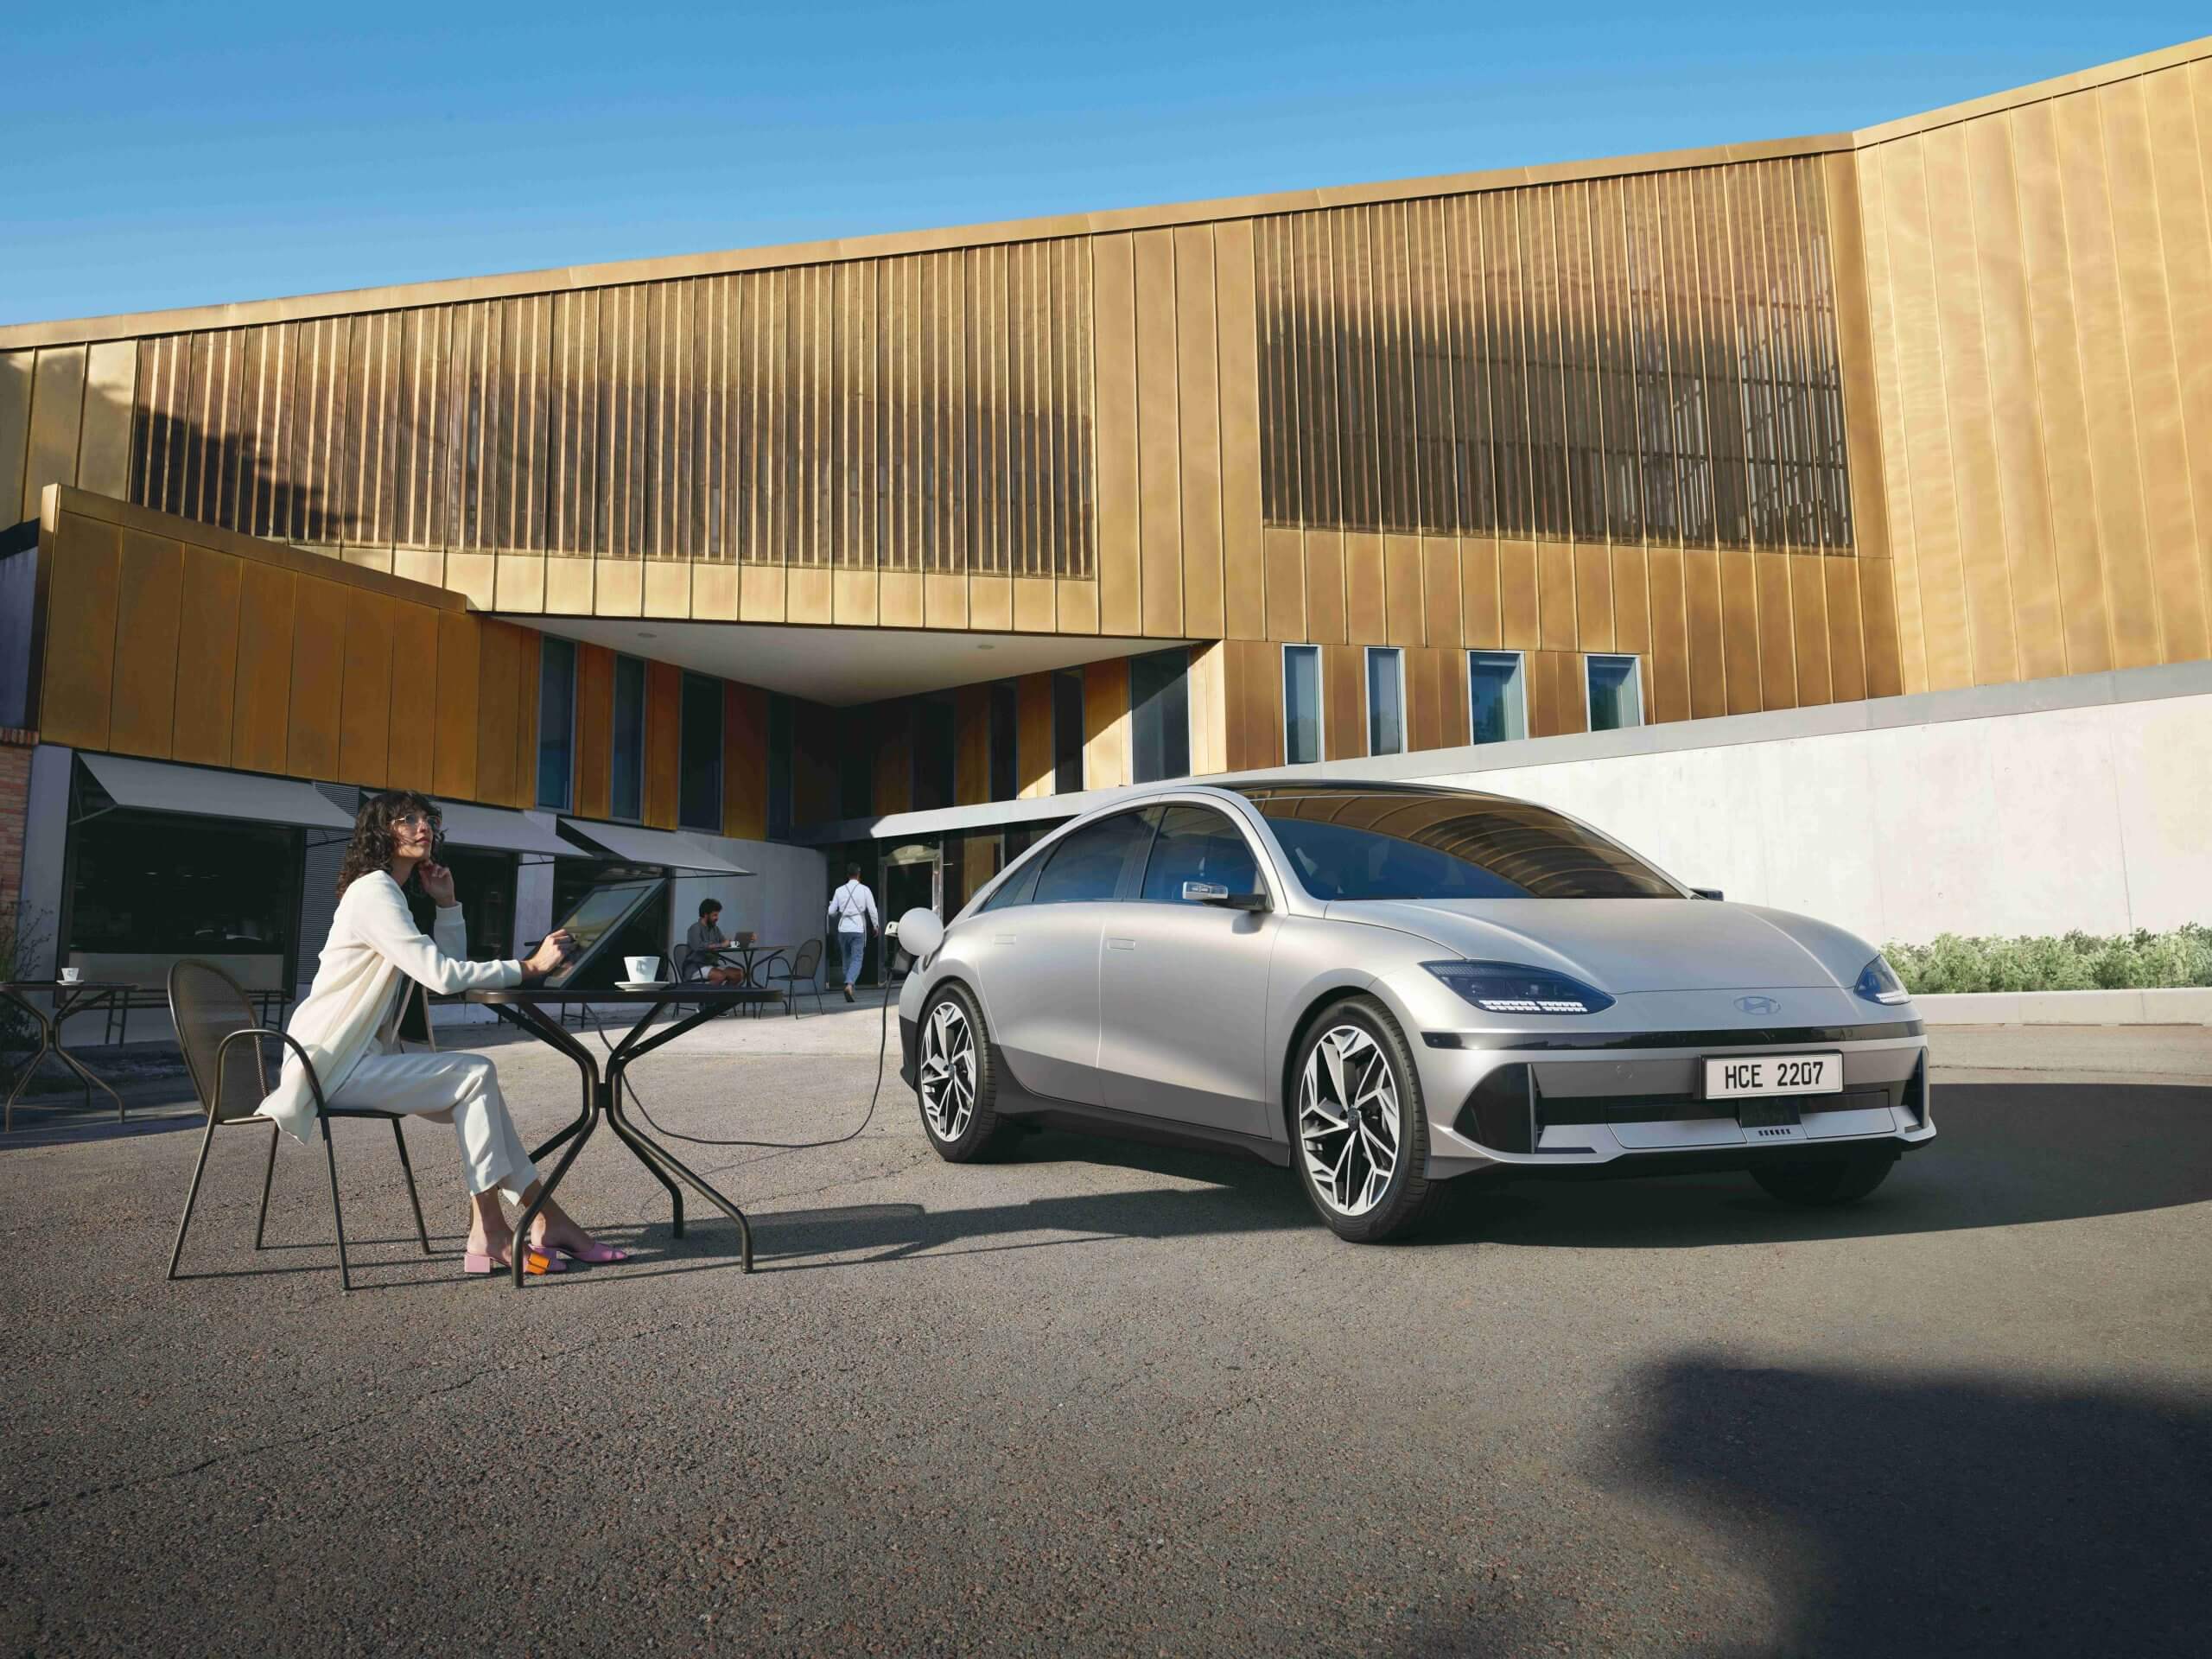 Hyundai ставит перед собой цель значительного роста продаж благодаря новым предложениям электромобилей